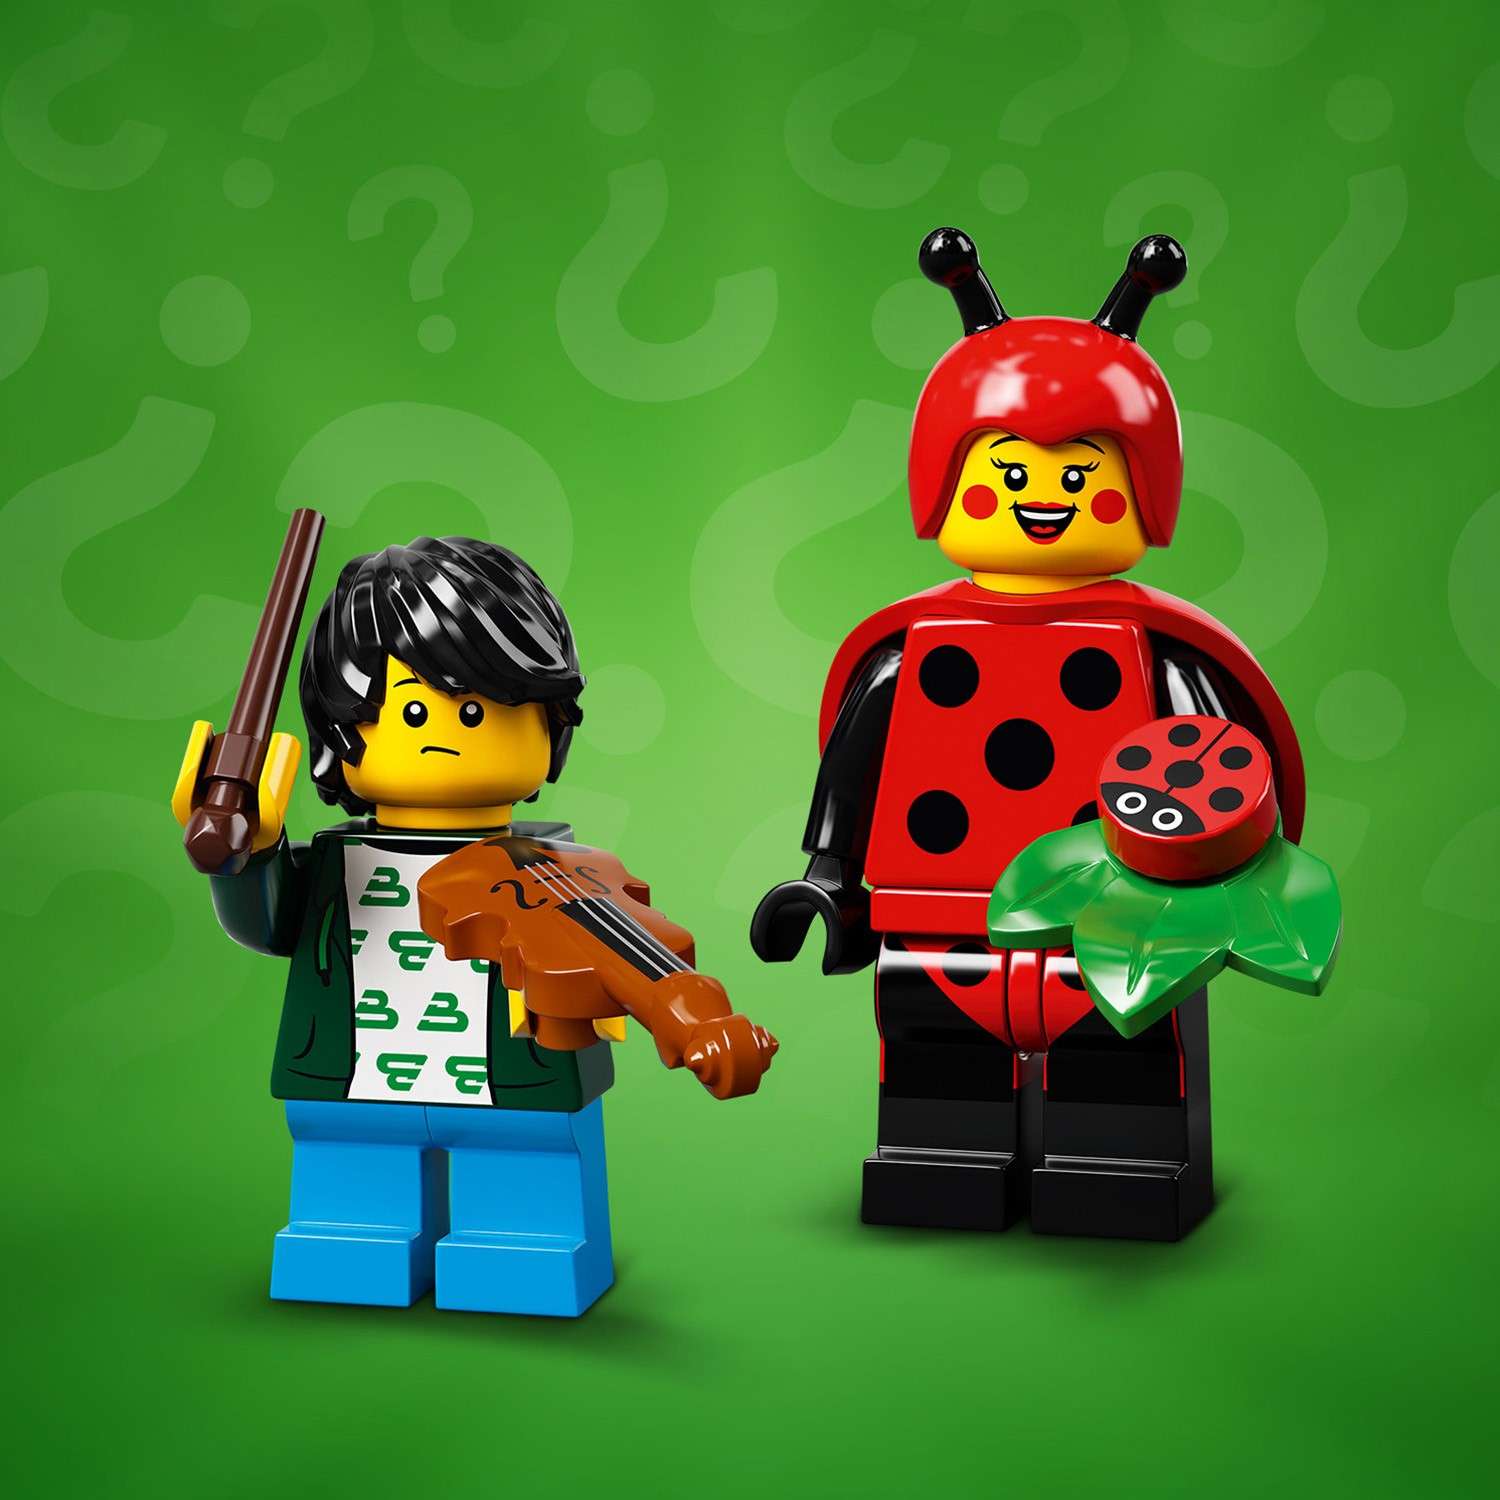 Конструктор LEGO Minifigures Минифигурки Серия 21 71029 - фото 6